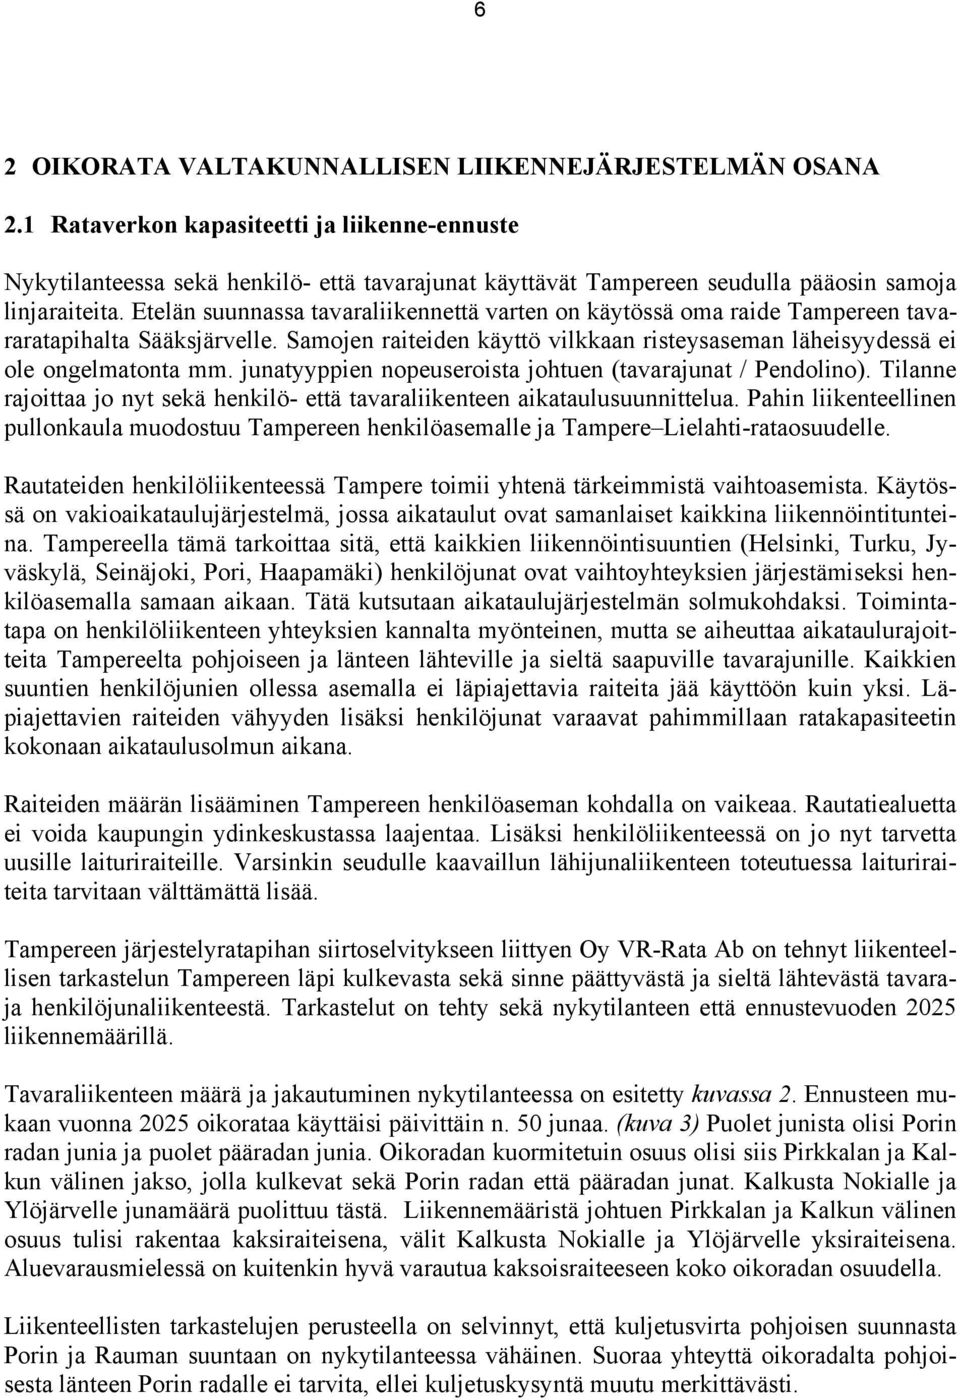 Etelän suunnassa tavaraliikennettä varten on käytössä oma raide Tampereen tavararatapihalta Sääksjärvelle. Samojen raiteiden käyttö vilkkaan risteysaseman läheisyydessä ei ole ongelmatonta mm.